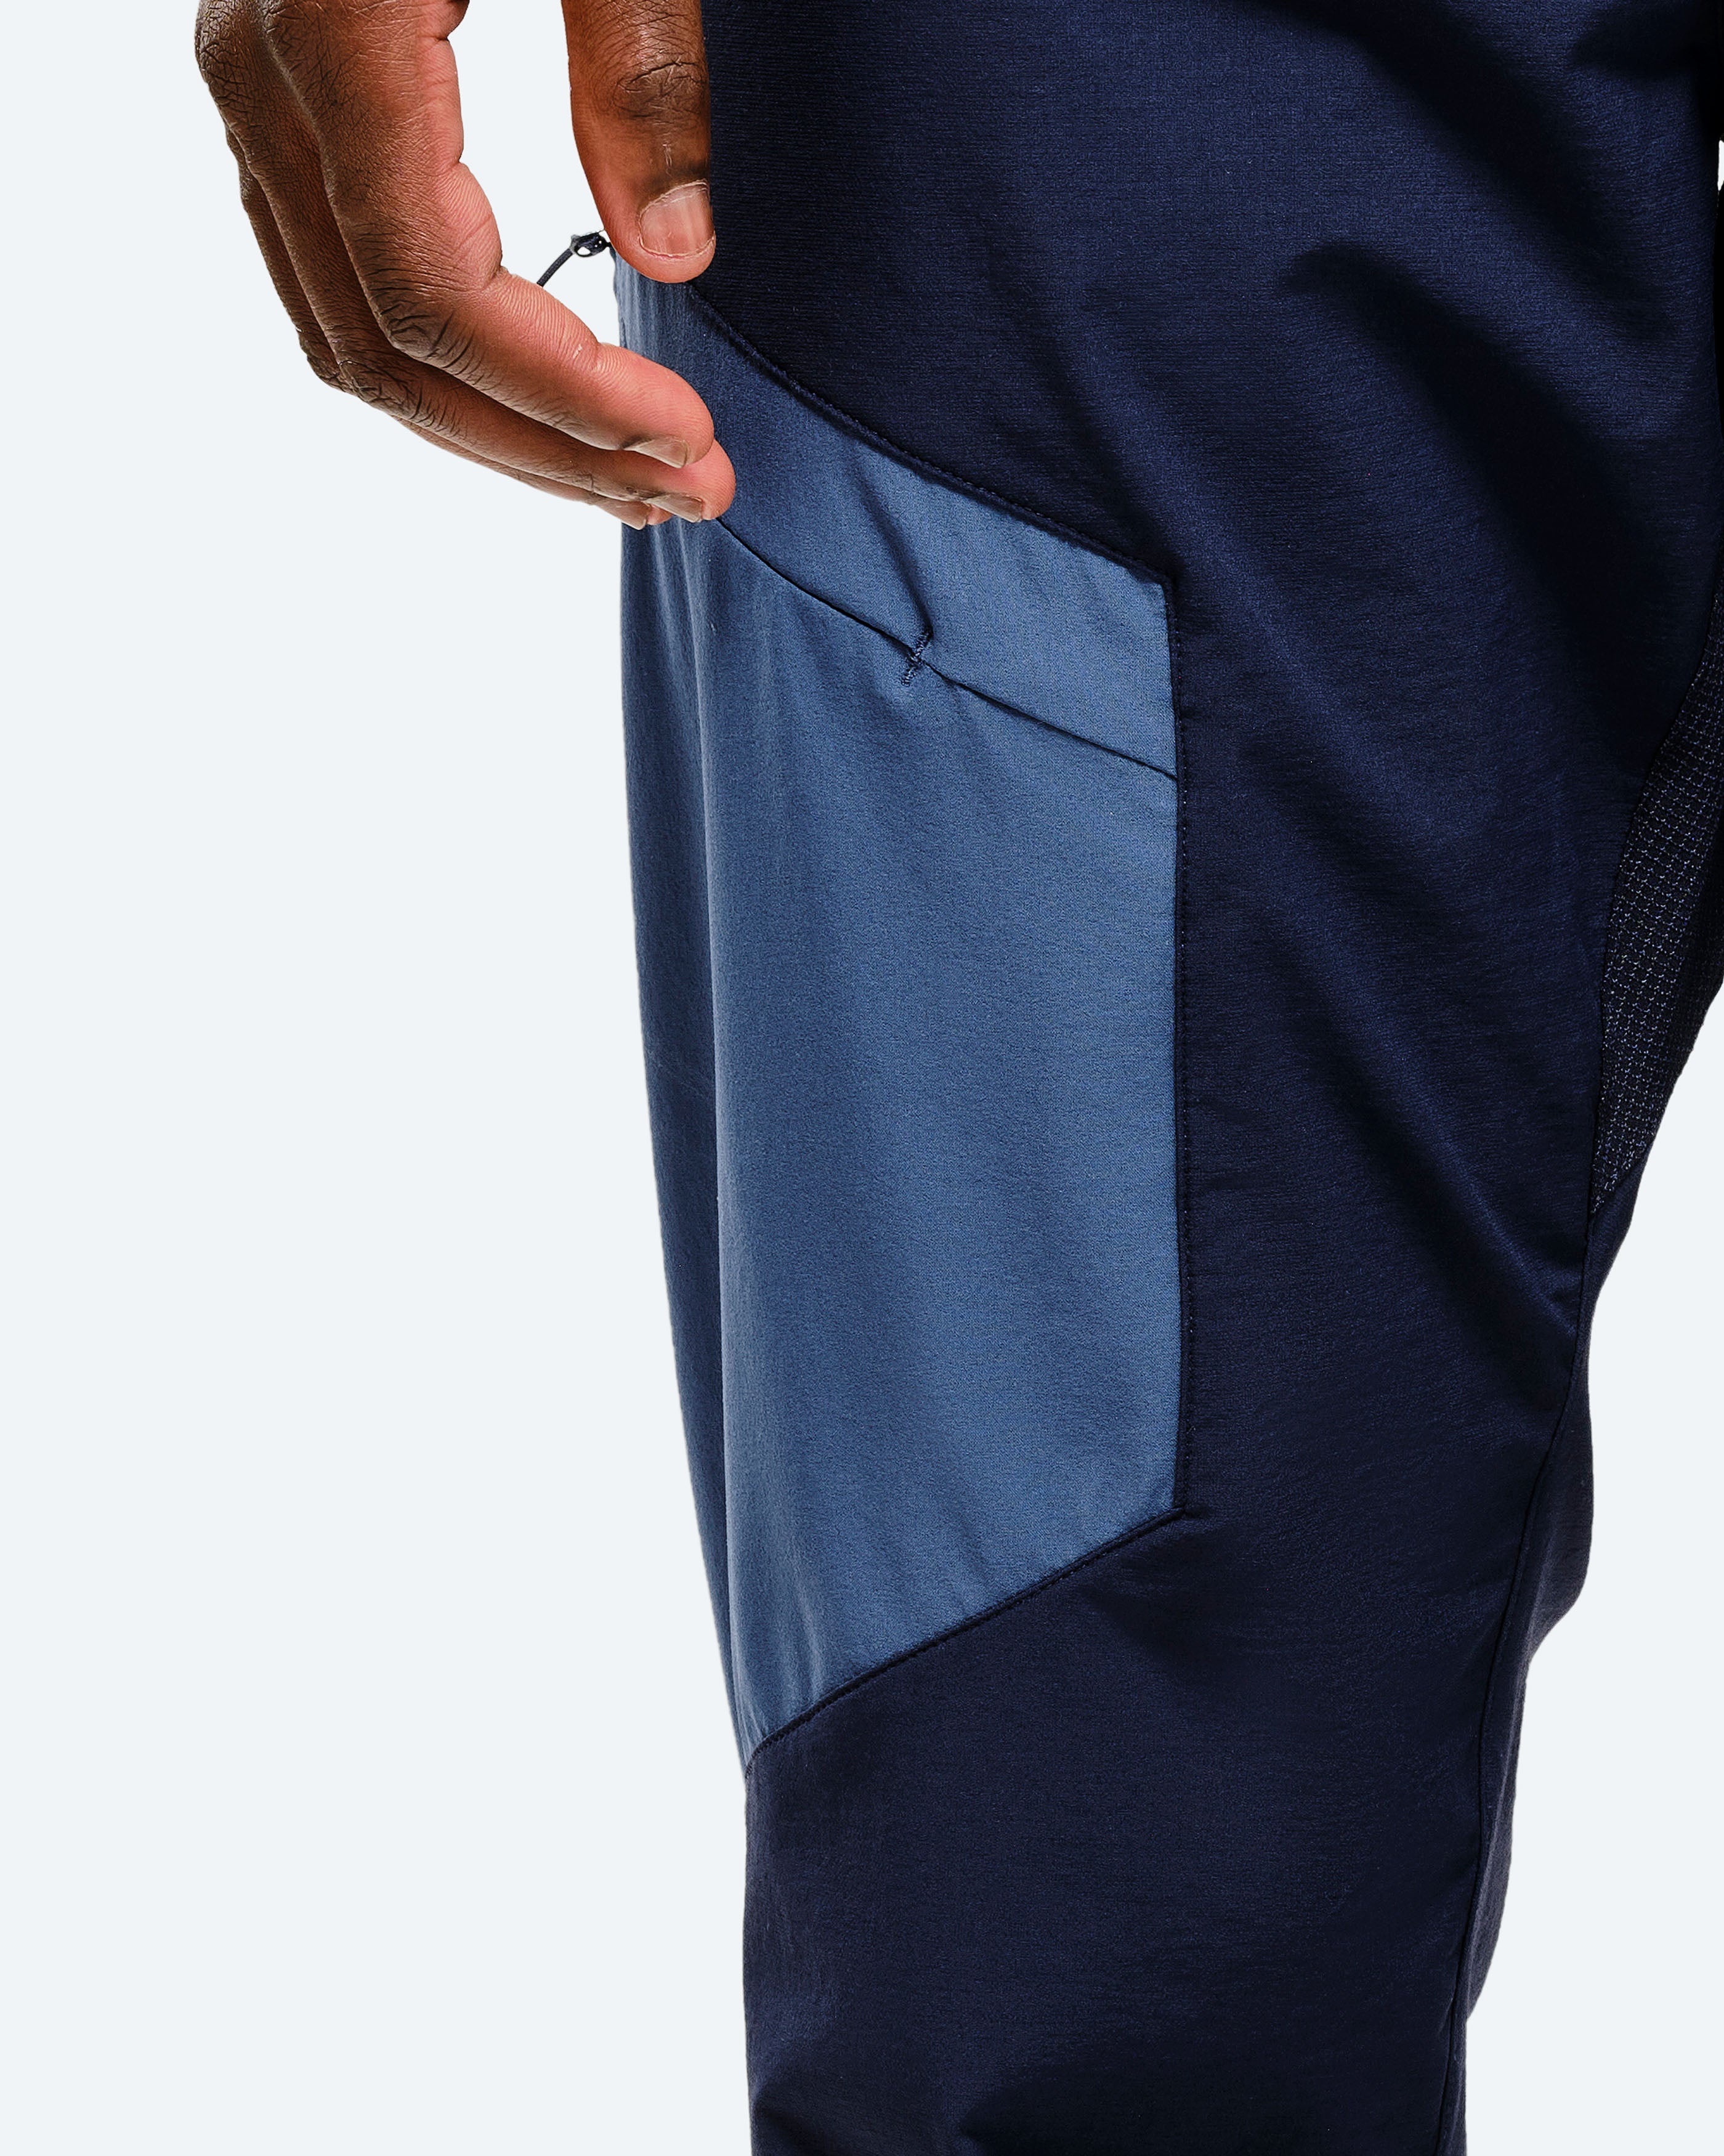 Leg pocket in contrast color. card image